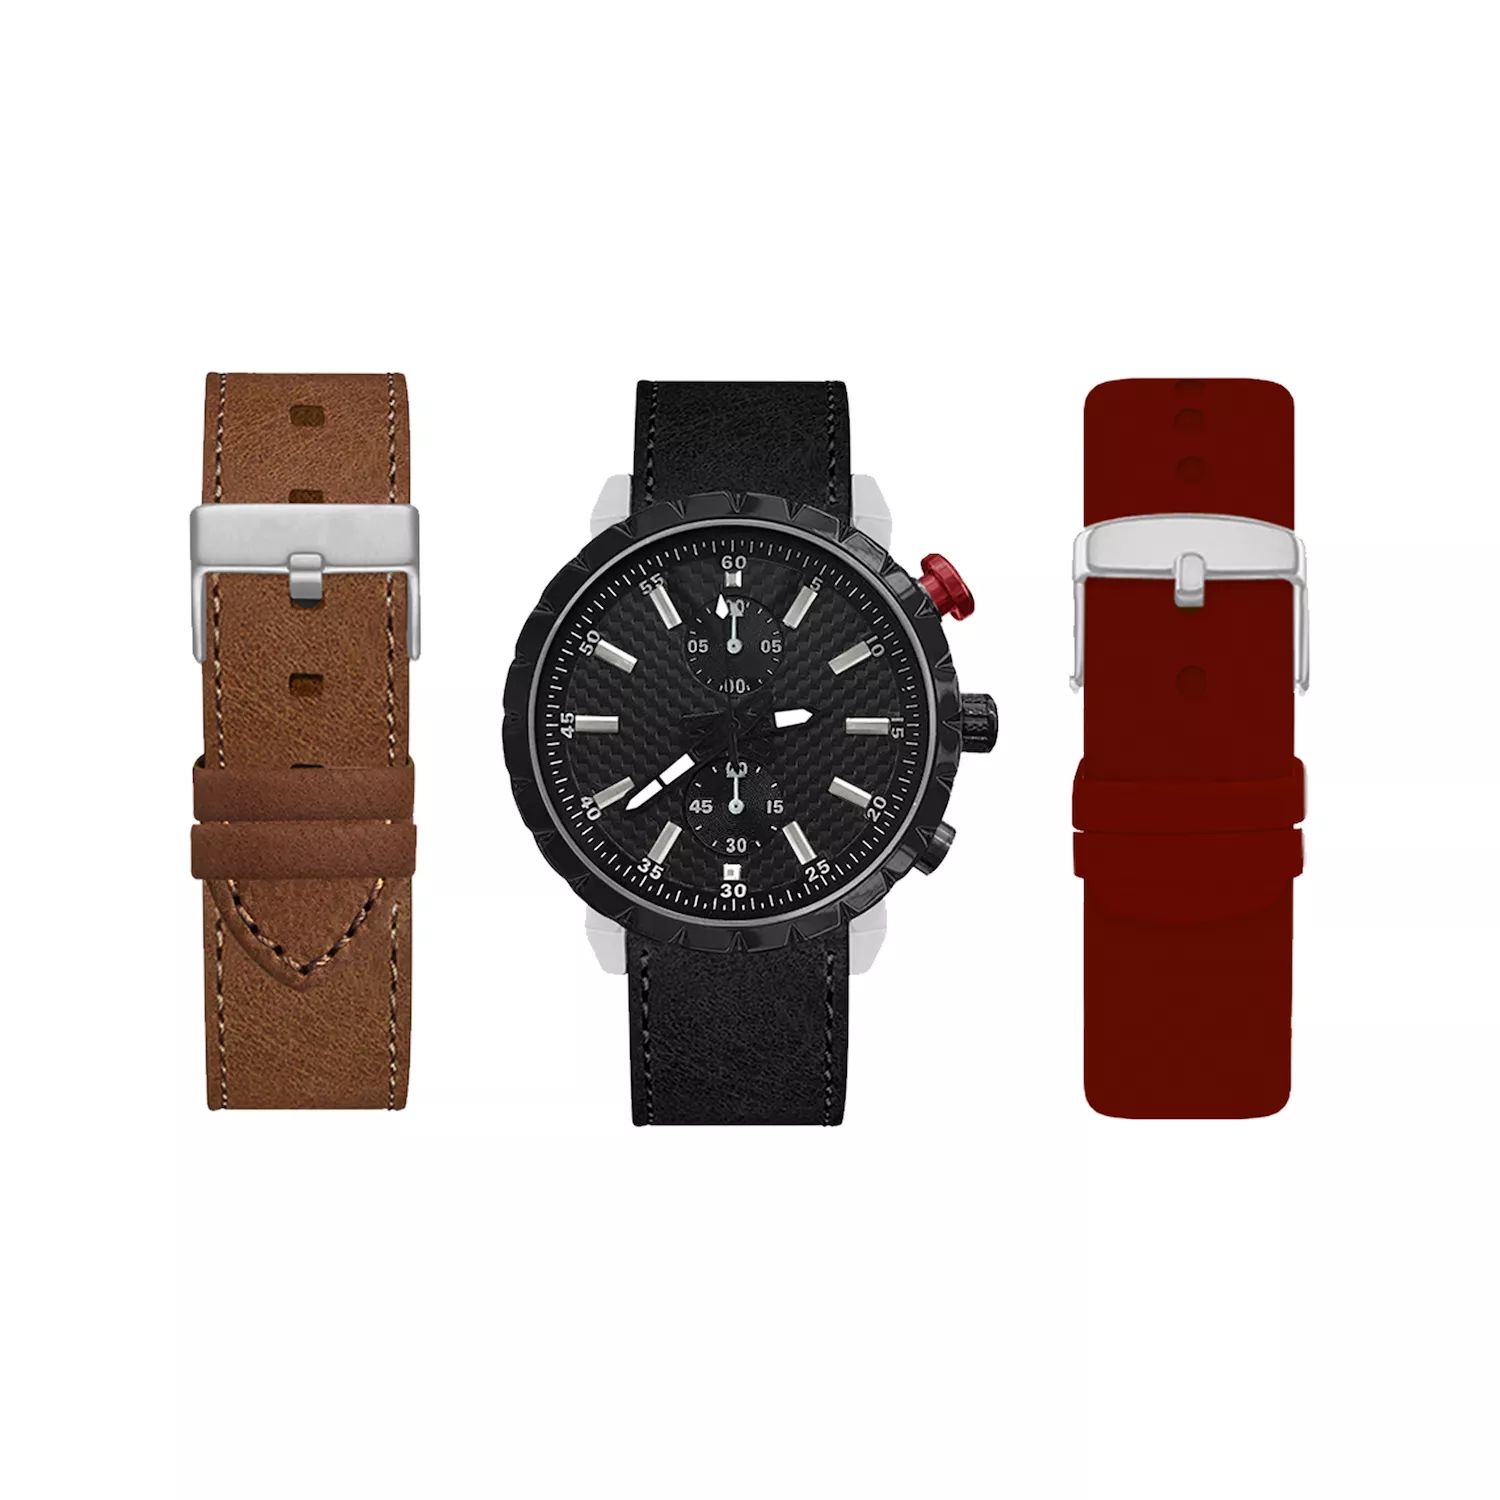 Мужские черные часы со сменными ремешками бордового, коричневого и черного цвета American Exchange